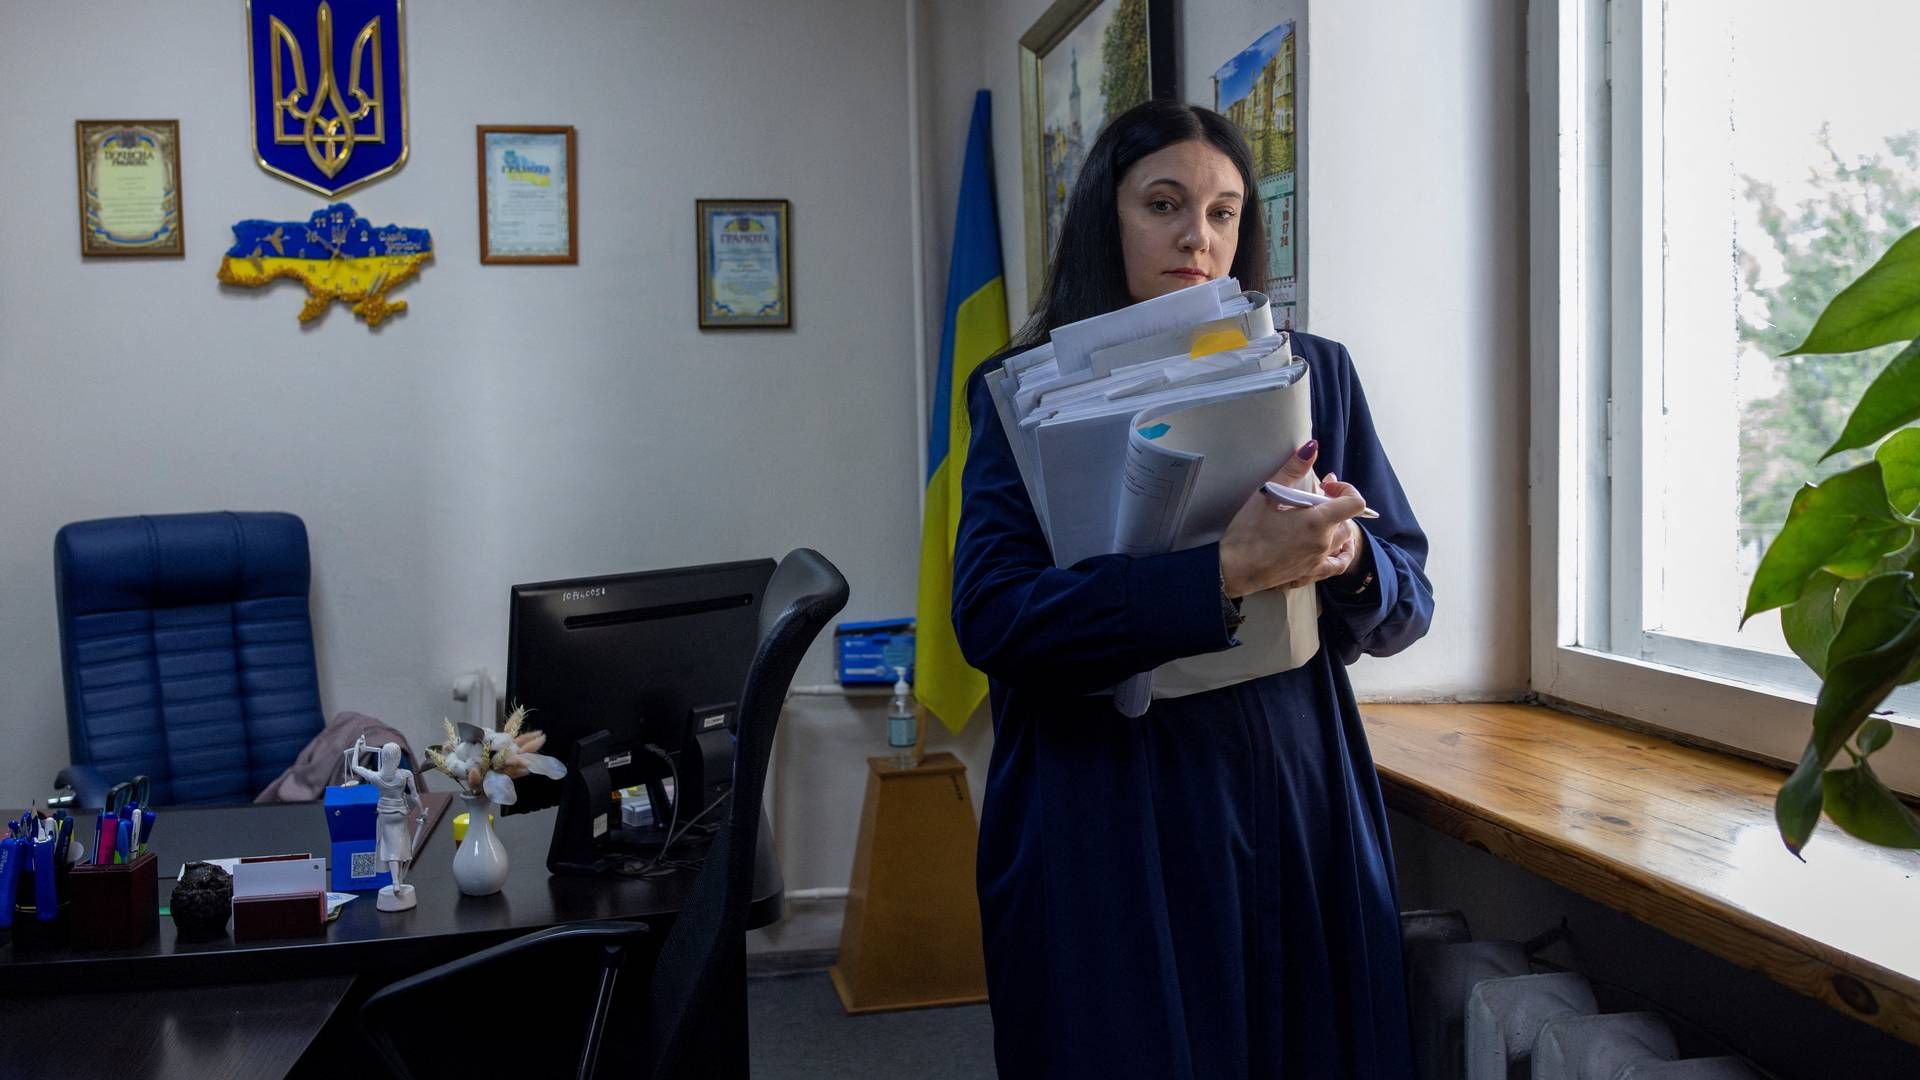 Vira Levko er dommer i hovedstaden Kiev. Når hun taler med kollegaer i udlandet om arbejdsbyrden, har de svært ved at forstå den store arbejdsbyrde, siger hun. | Foto: Thomas Peter